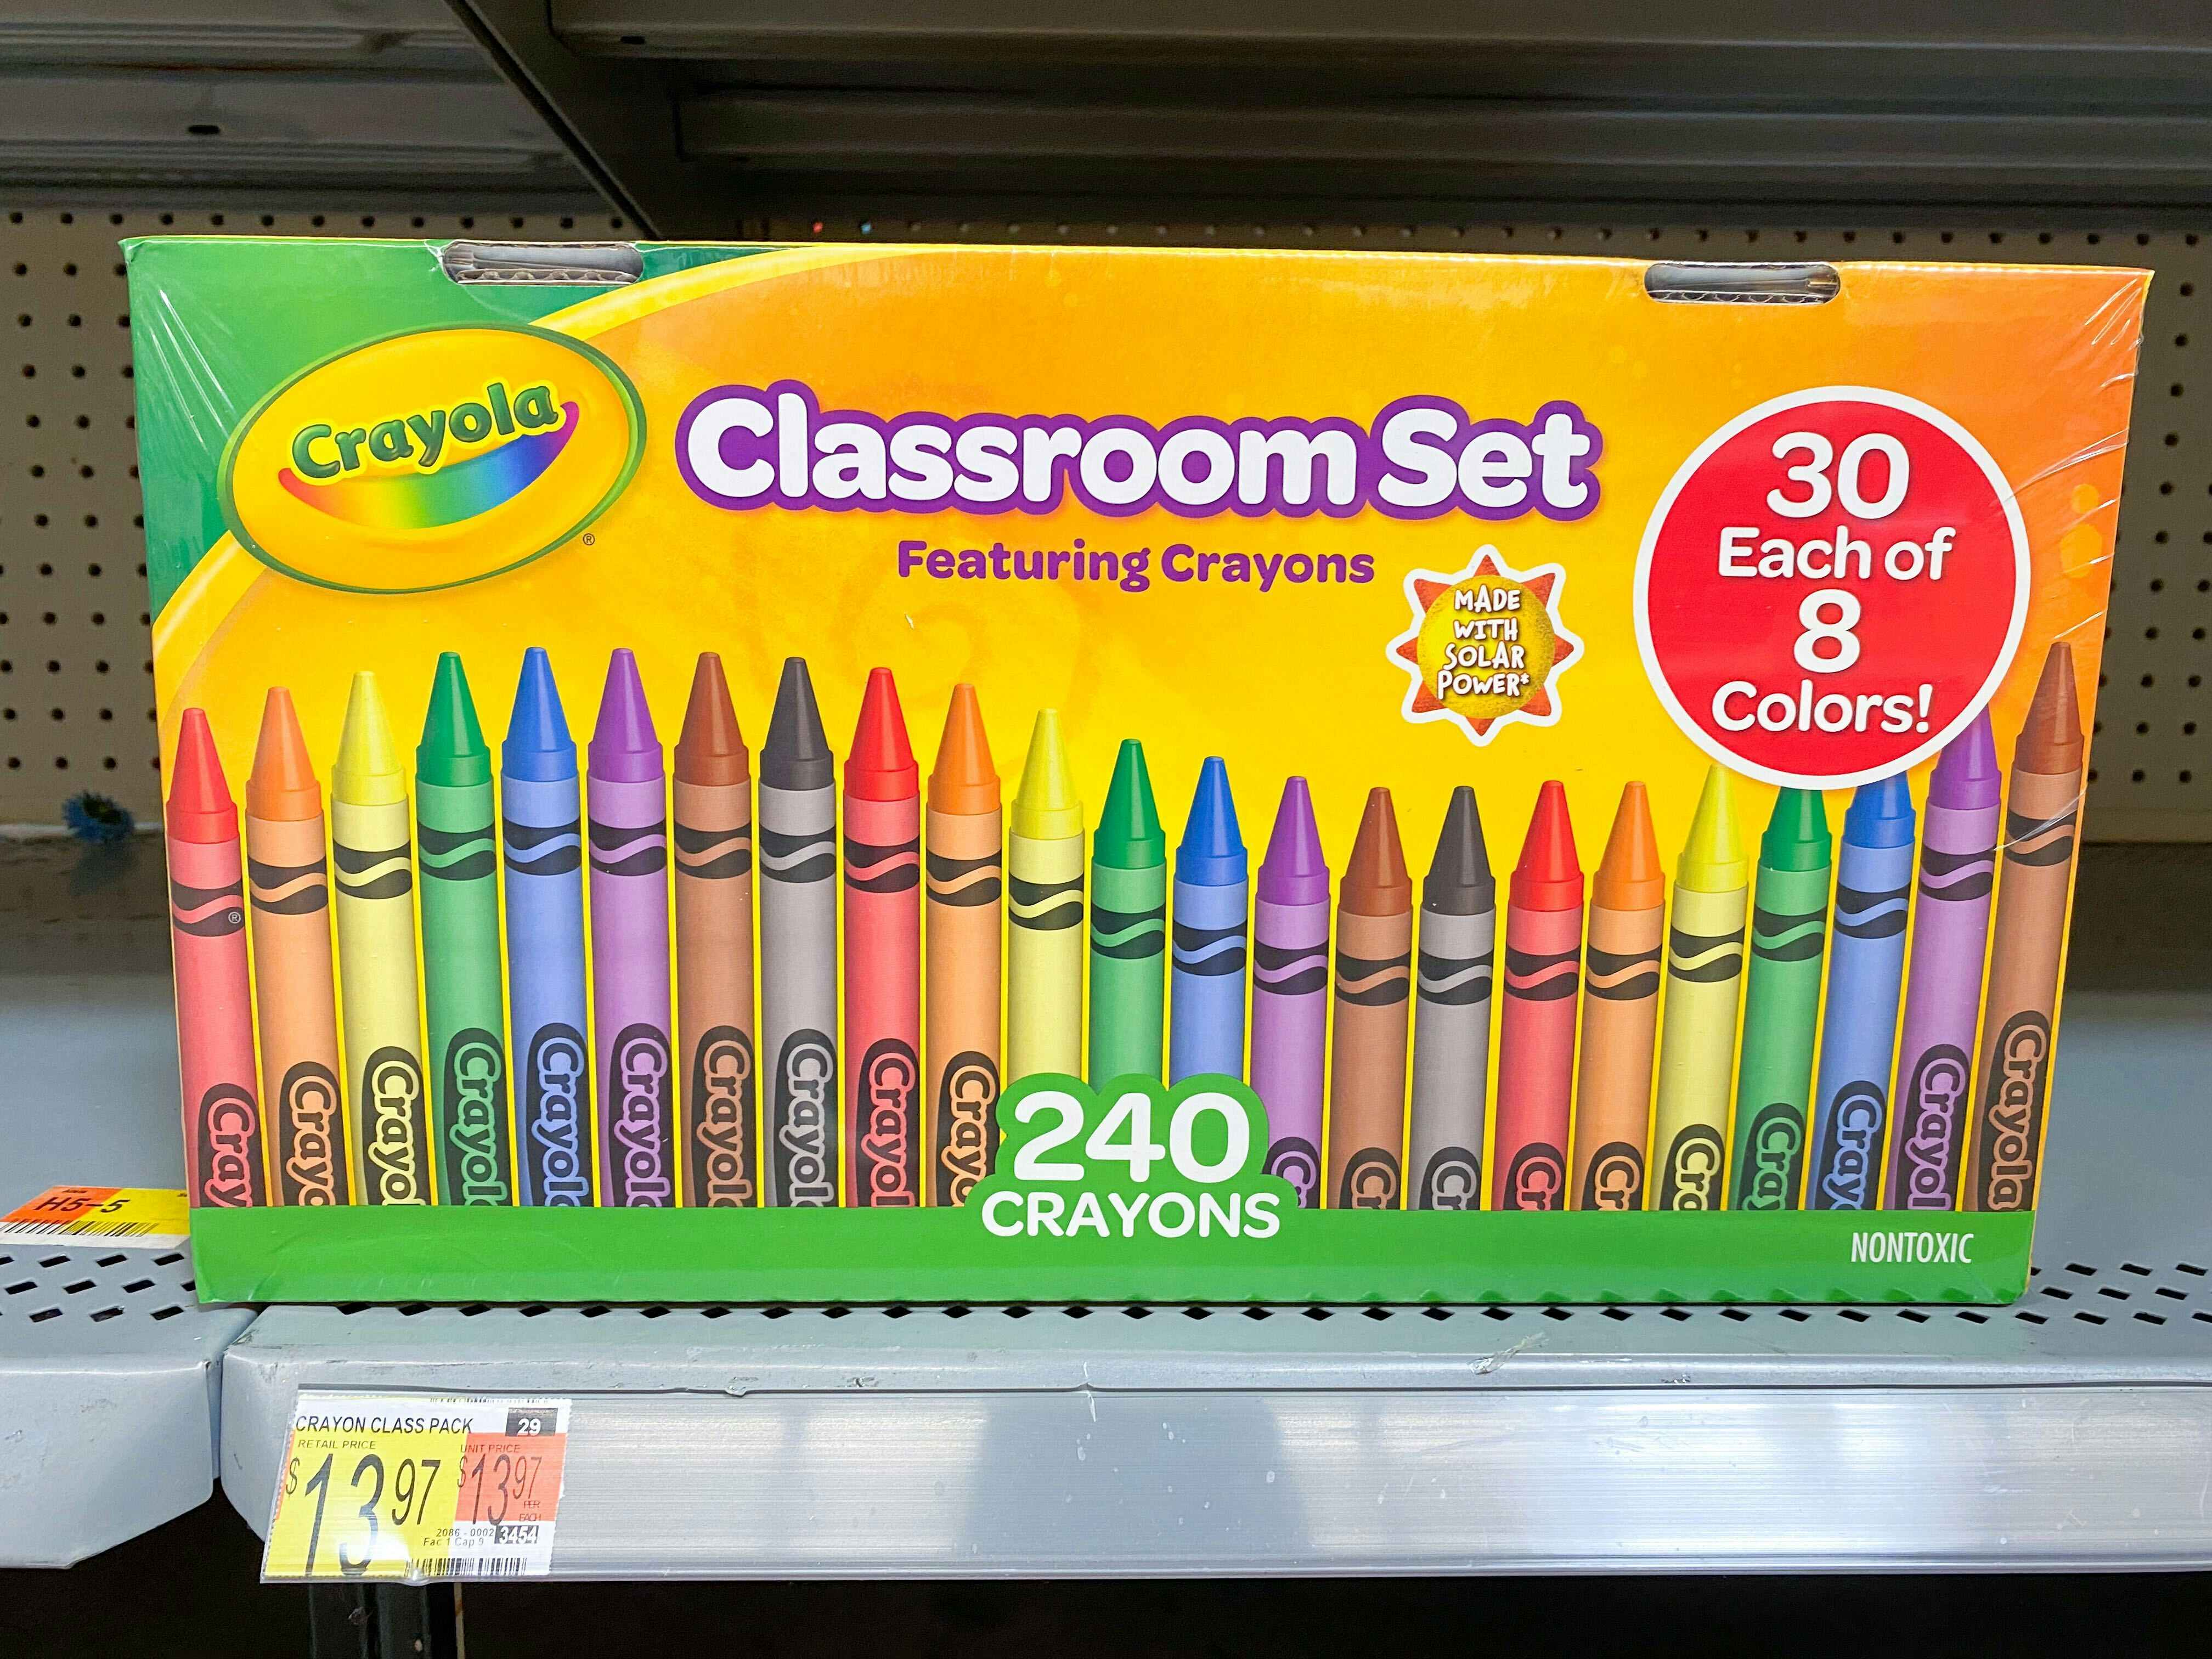 Crayola Crayons Classroom Set on shelf at Walmart